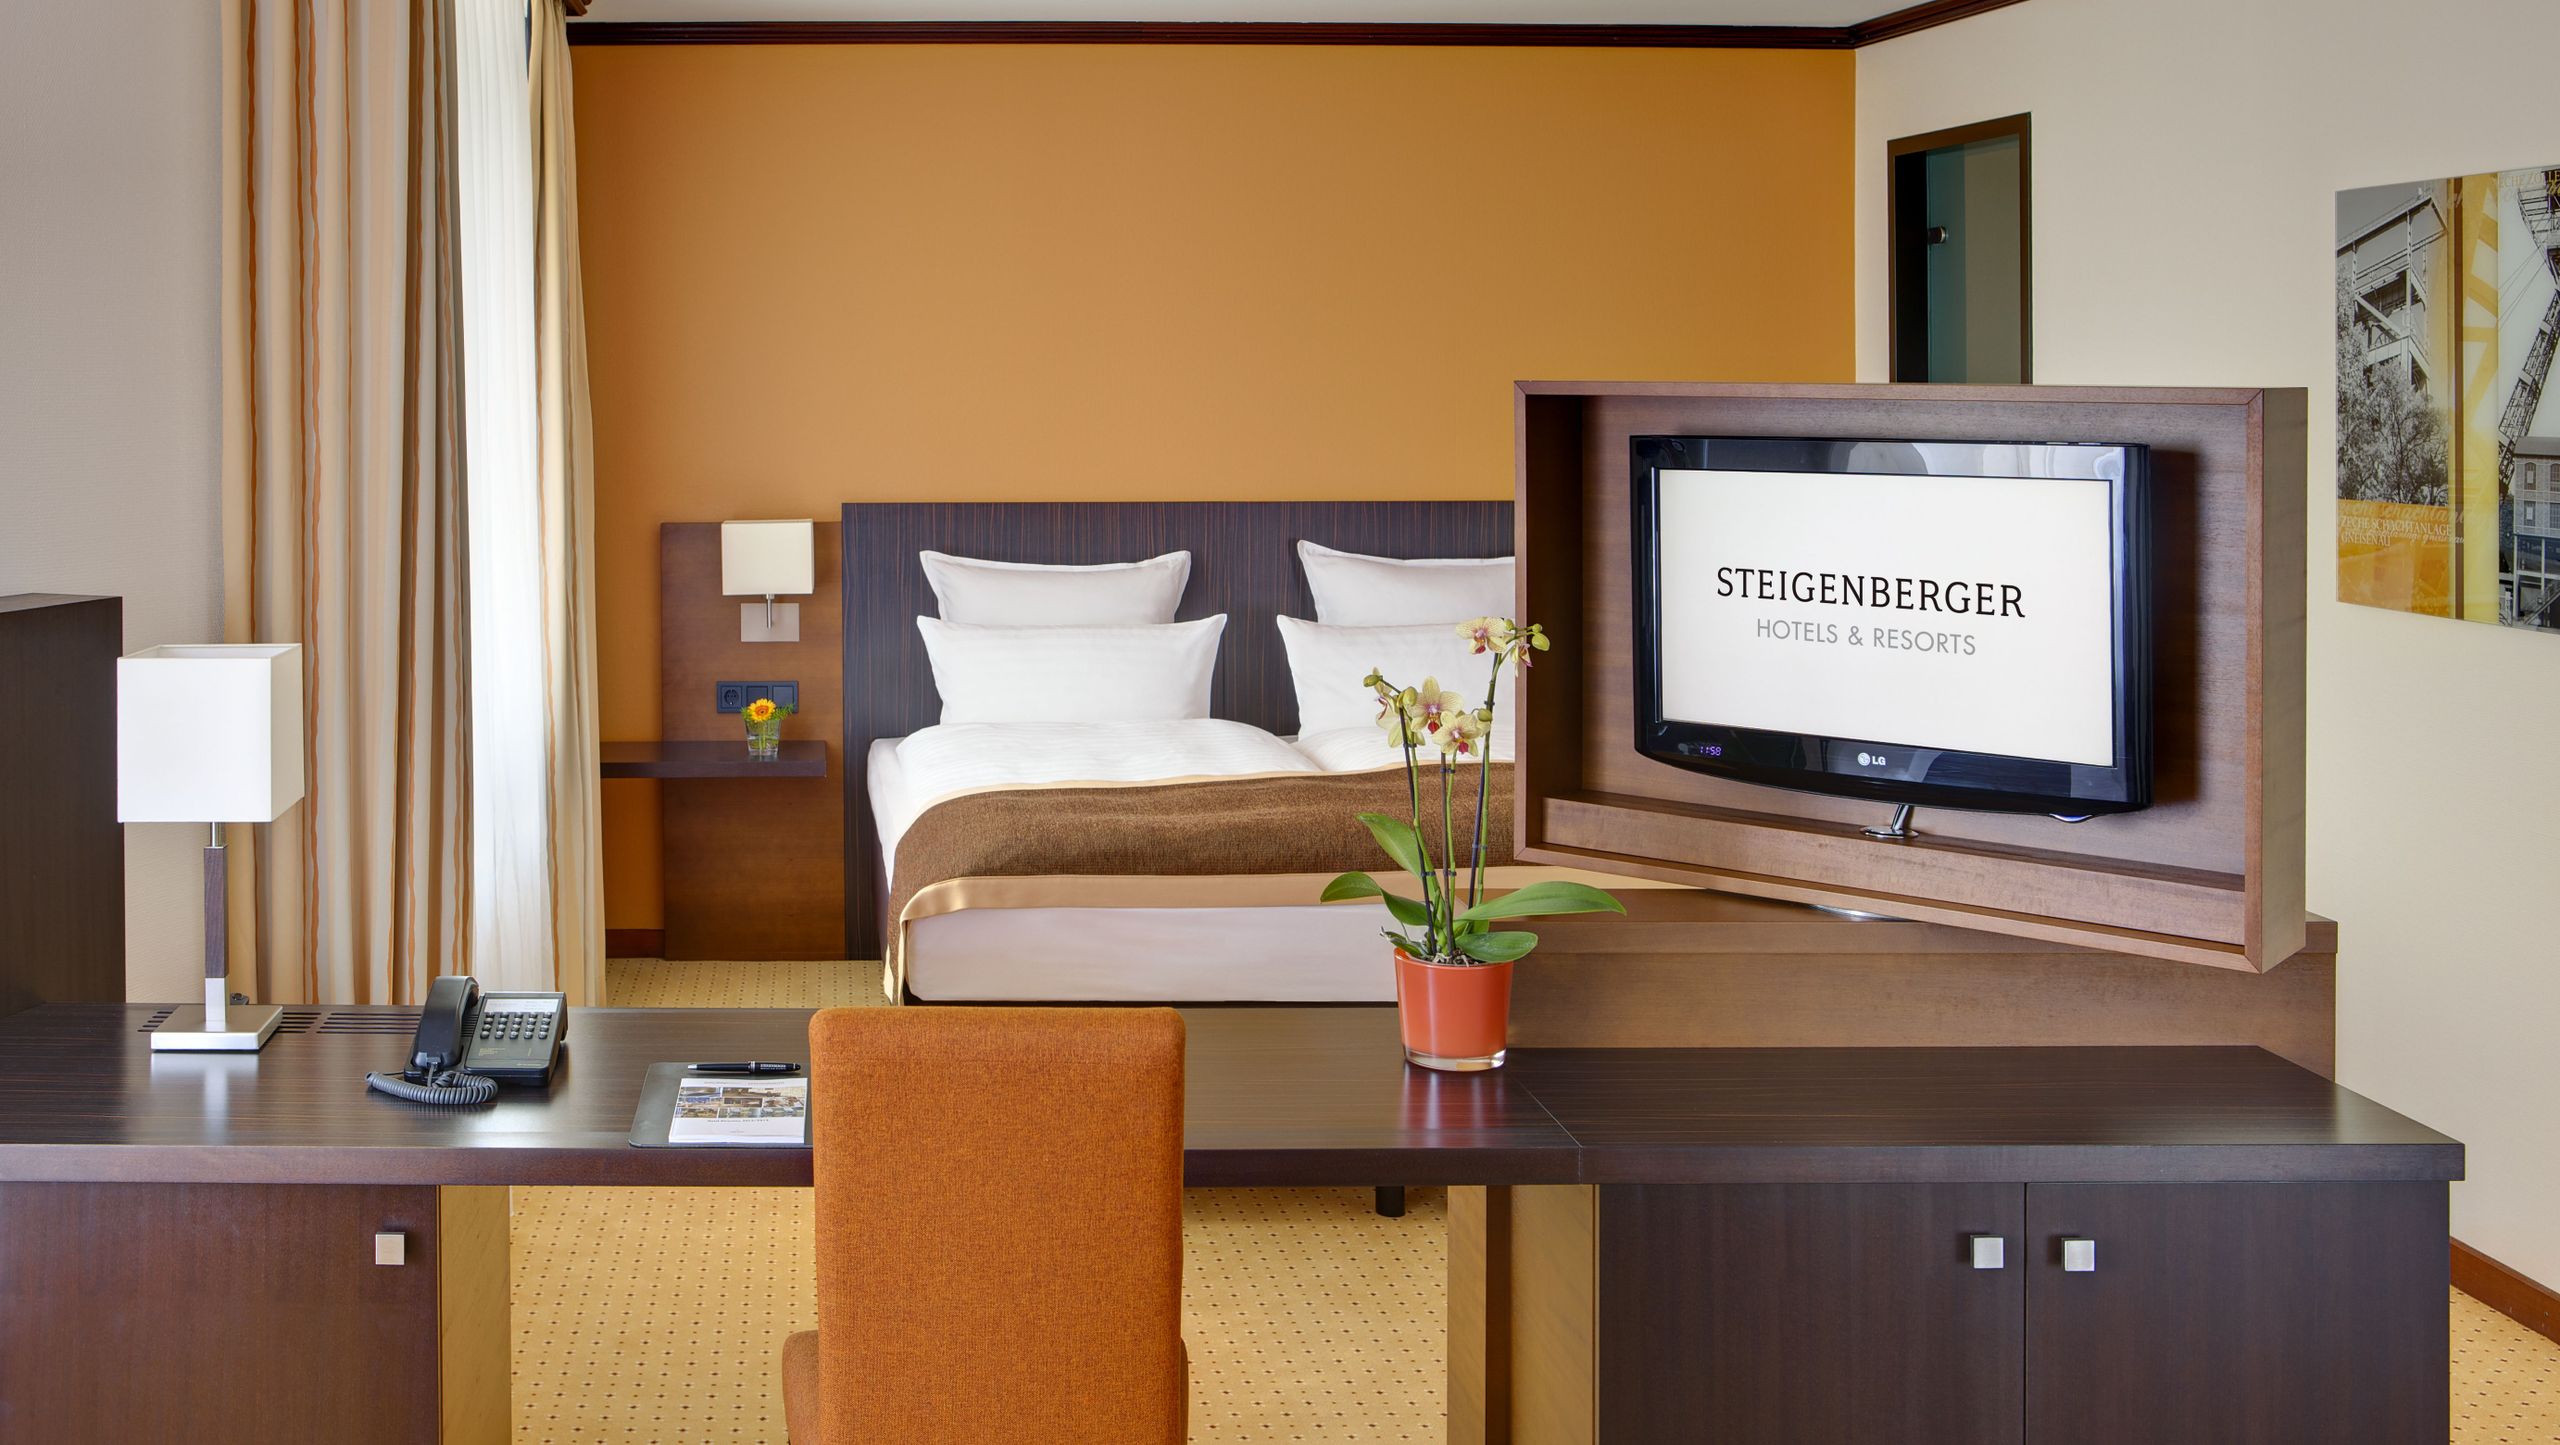 多特蒙德的普通套房 -Steigenberger Hotel Dortmund - 房间